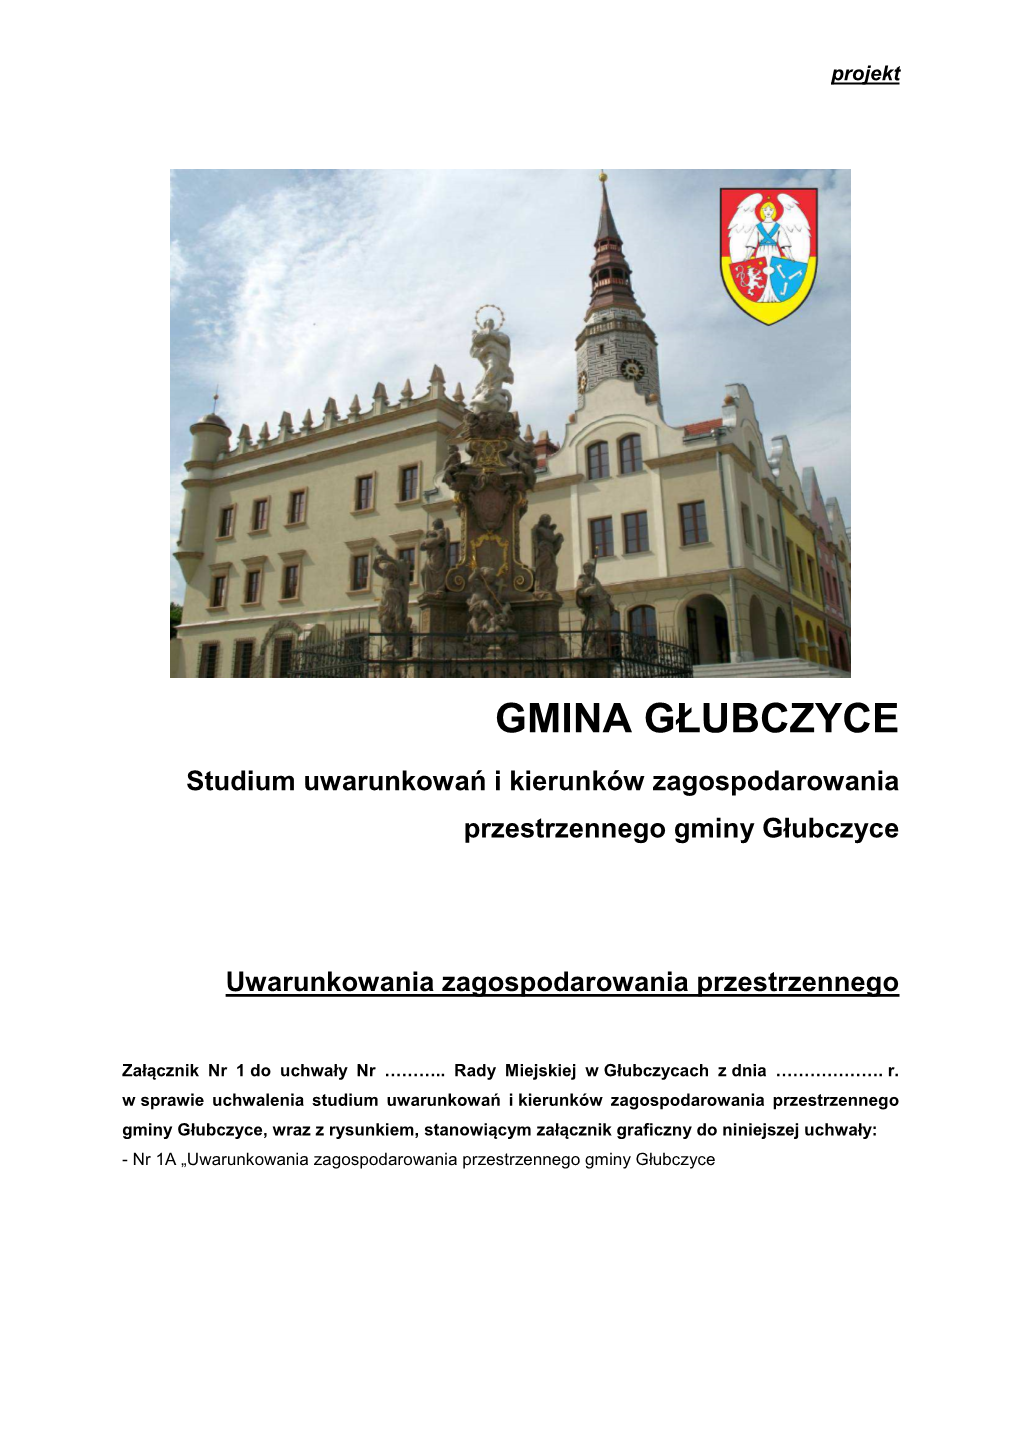 Gmina Głubczyce